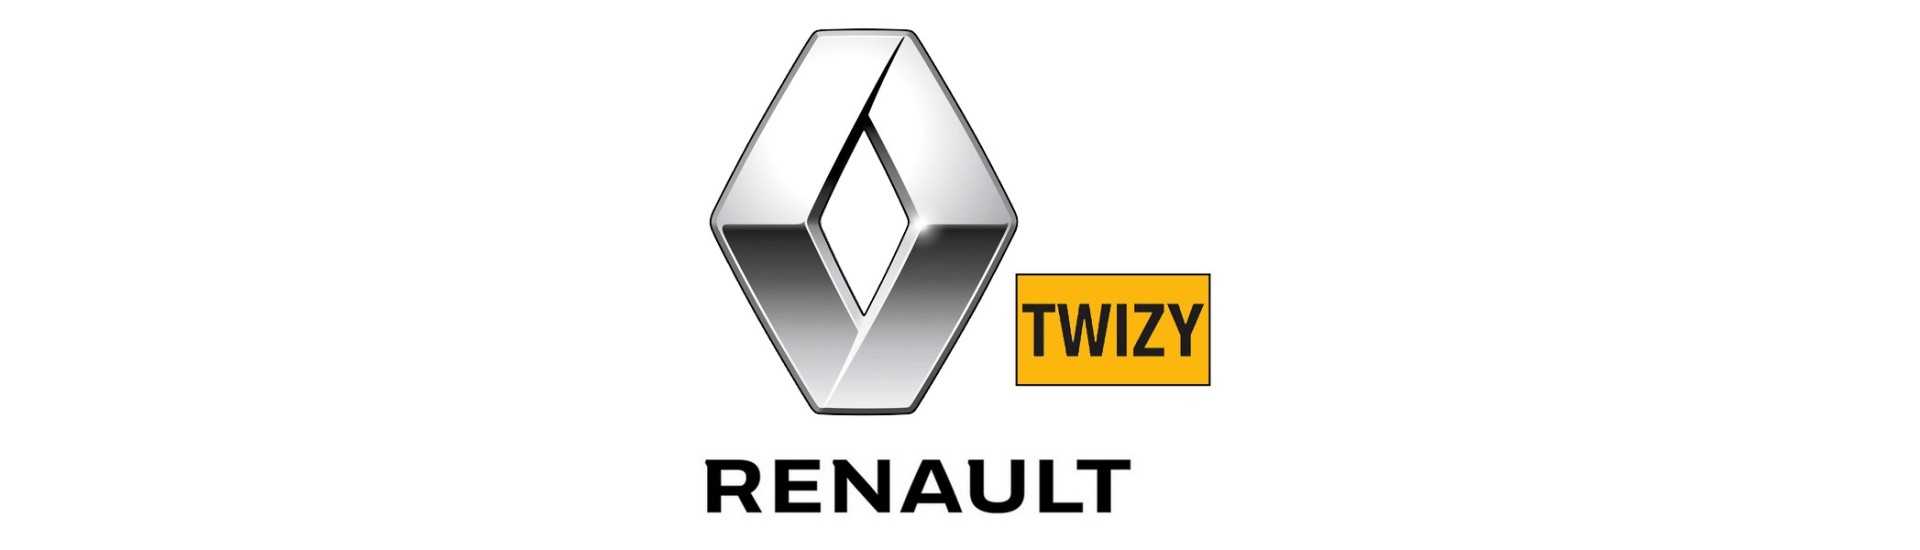 Bremsvertreter zum besten Preis ohne Lizenz Renault Twizy